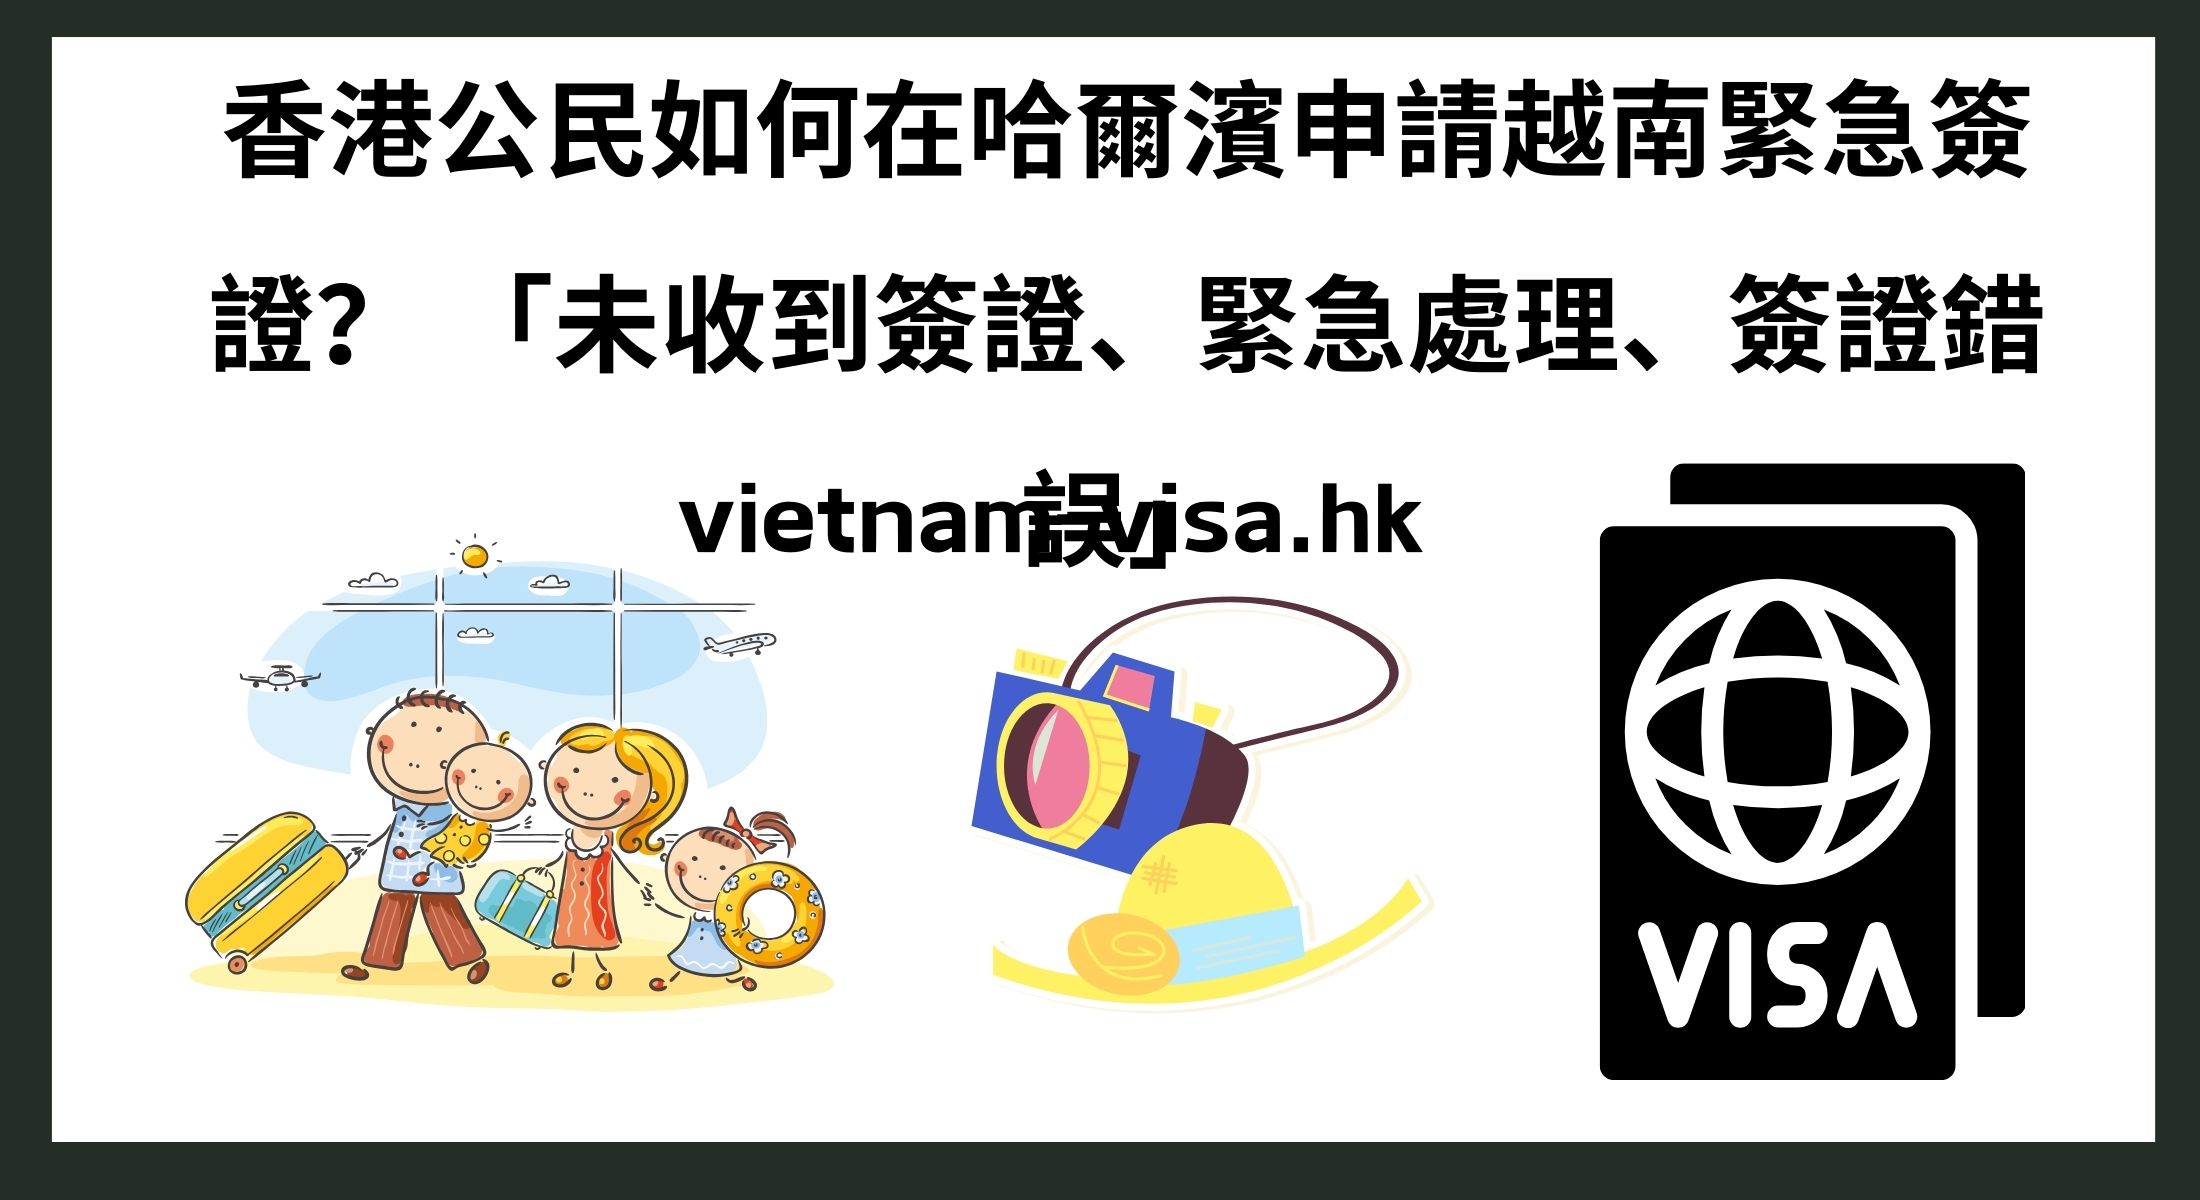 香港公民如何在哈爾濱申請越南緊急簽證？ 「未收到簽證、緊急處理、簽證錯誤」